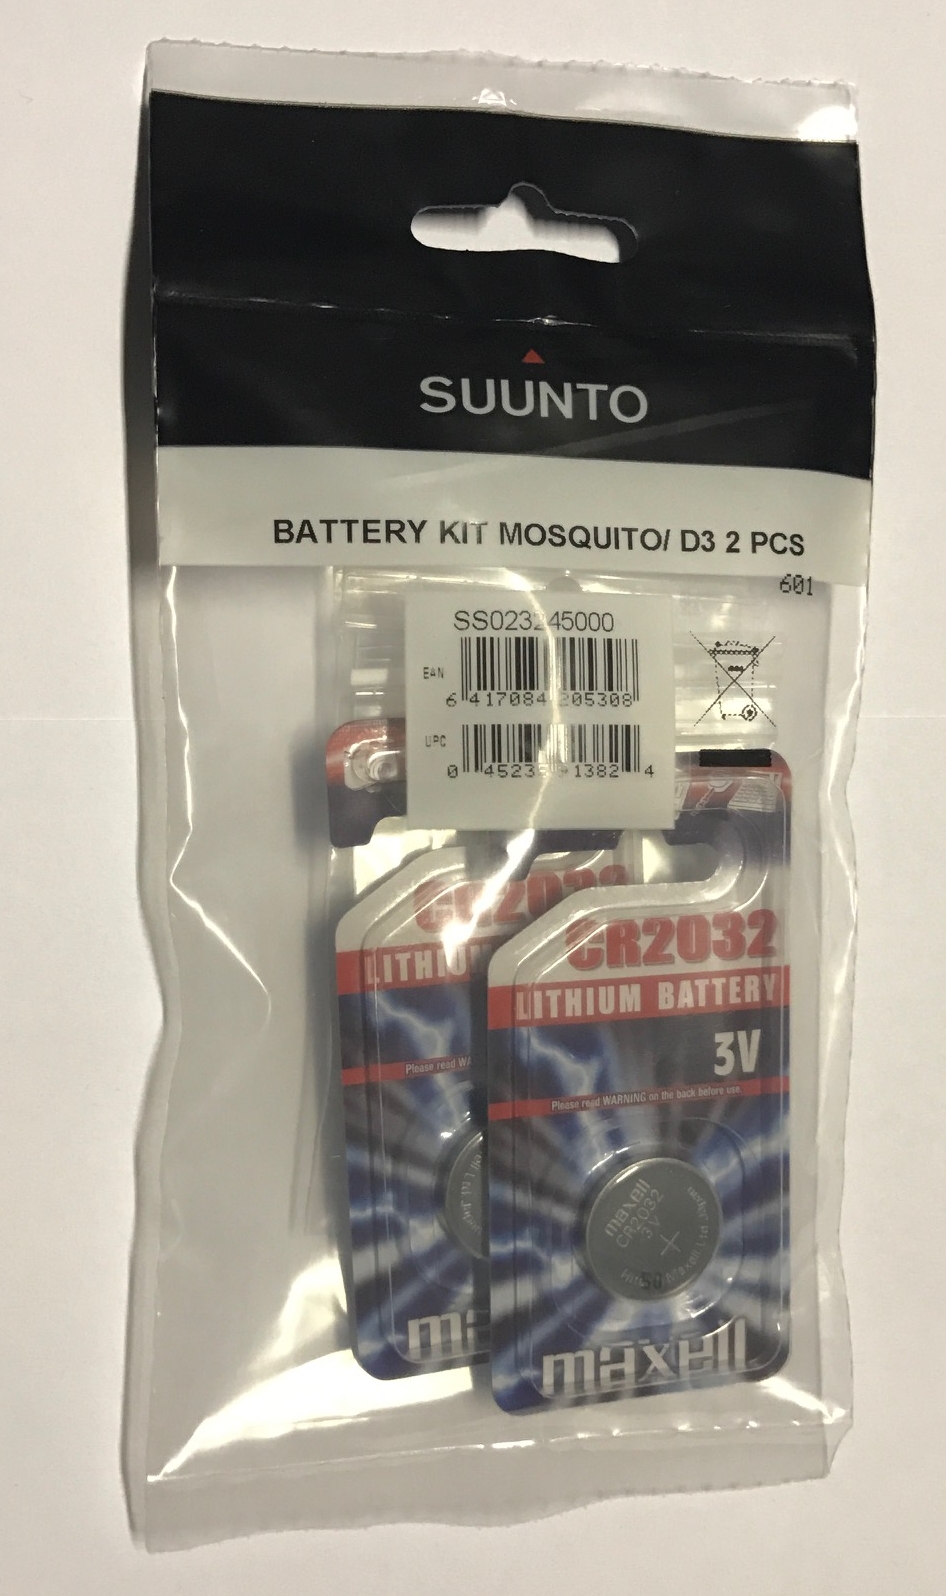 Suunto Batteriewechselsätze für Mosquito und D3 Tauchcomputer - 2 Stück